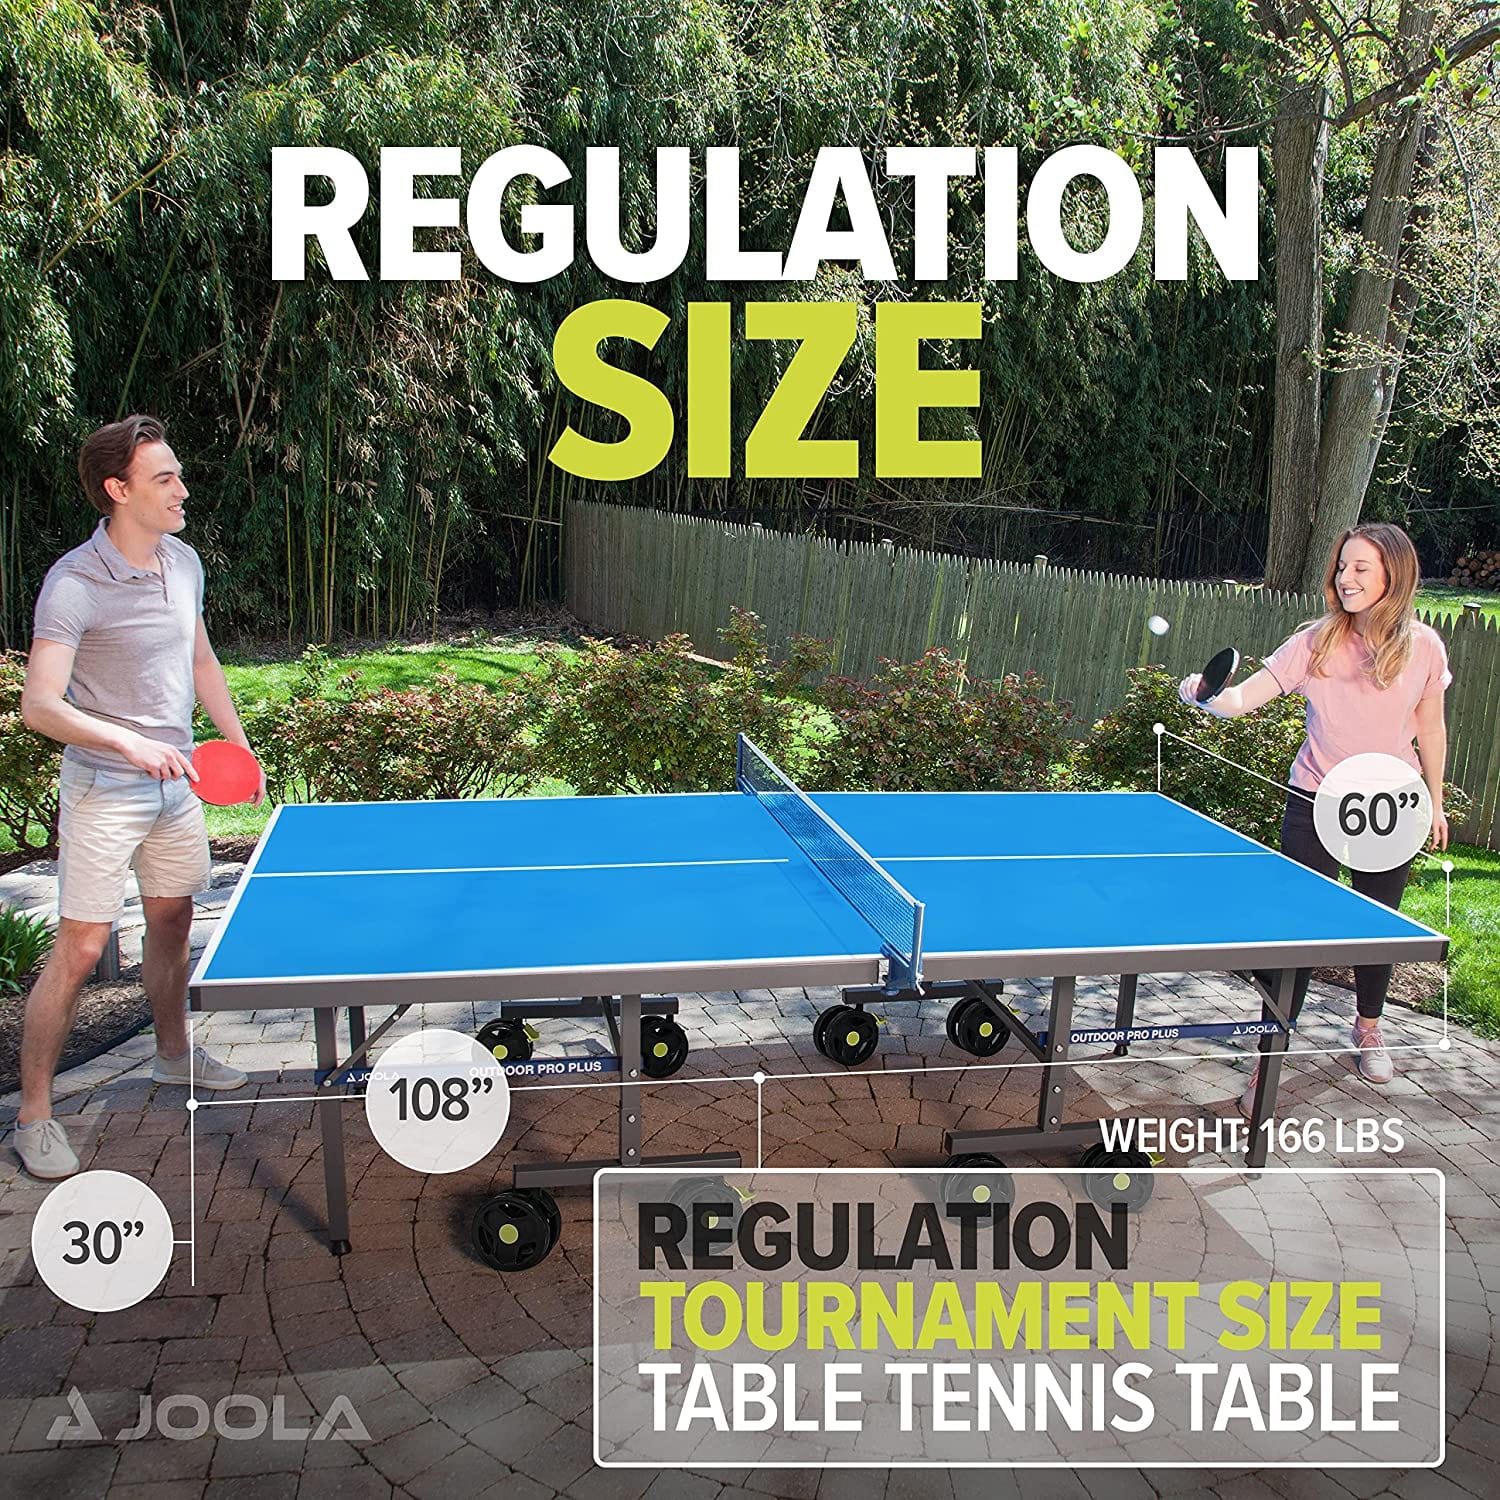 JOOLA NOVA PRO PLUS Outdoor Table Tennis Table - Atomic Game Store